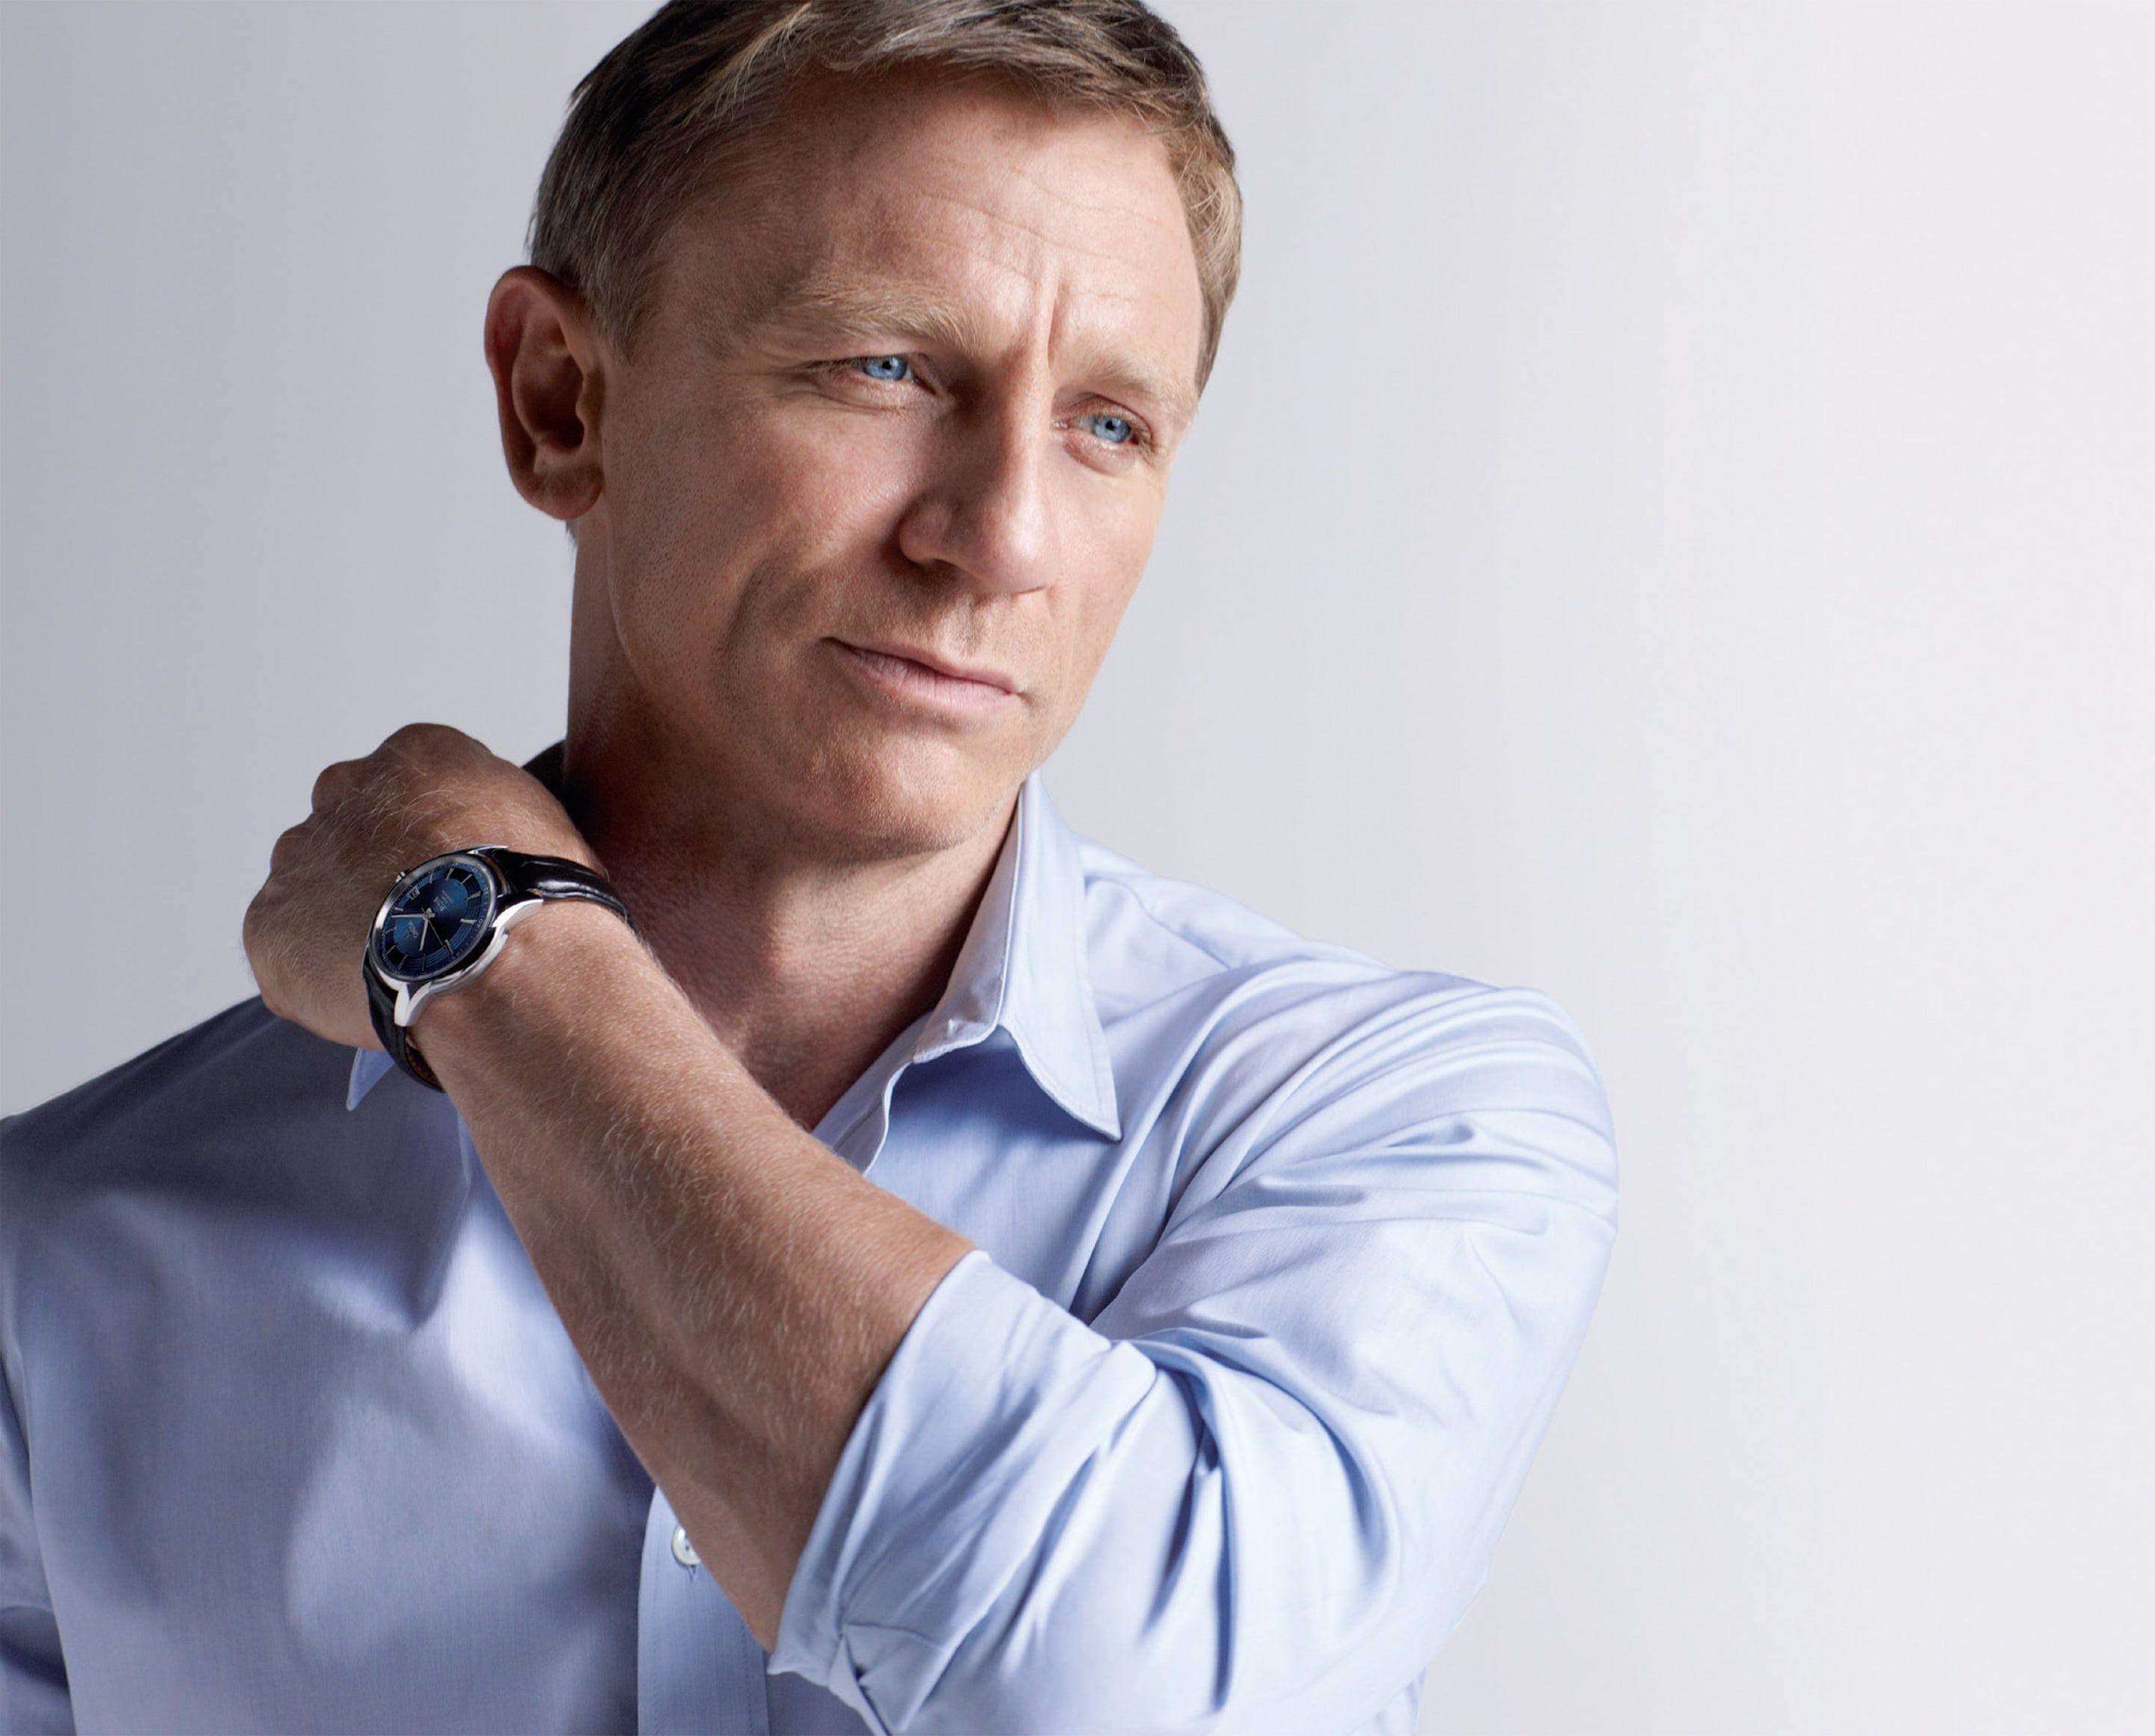 Daniel Craig Wallpapers - Top Free Daniel Craig Backgrounds ...